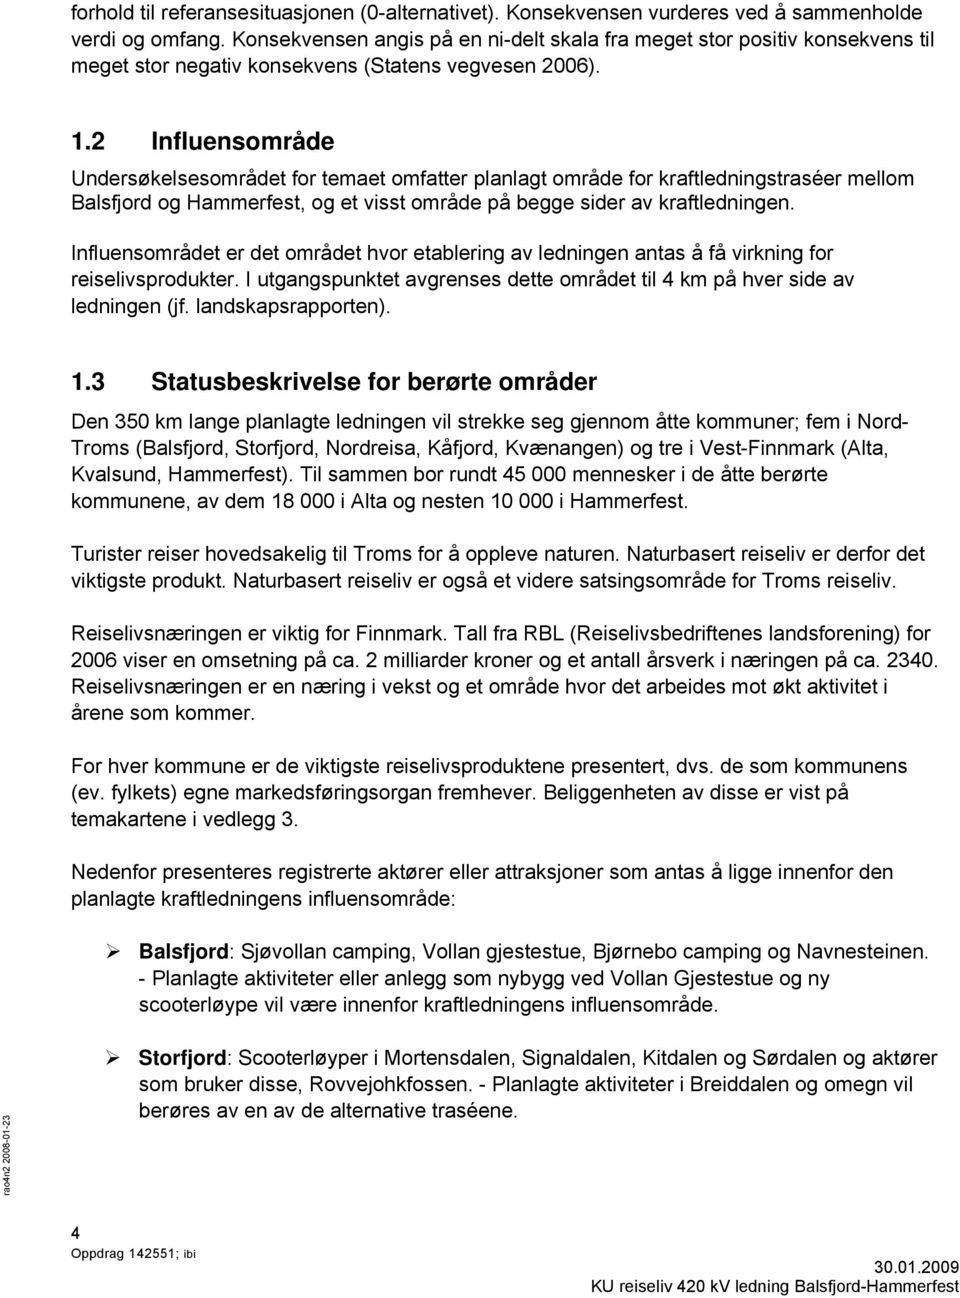 2 Influensområde Undersøkelsesområdet for temaet omfatter planlagt område for kraftledningstraséer mellom Balsfjord og Hammerfest, og et visst område på begge sider av kraftledningen.